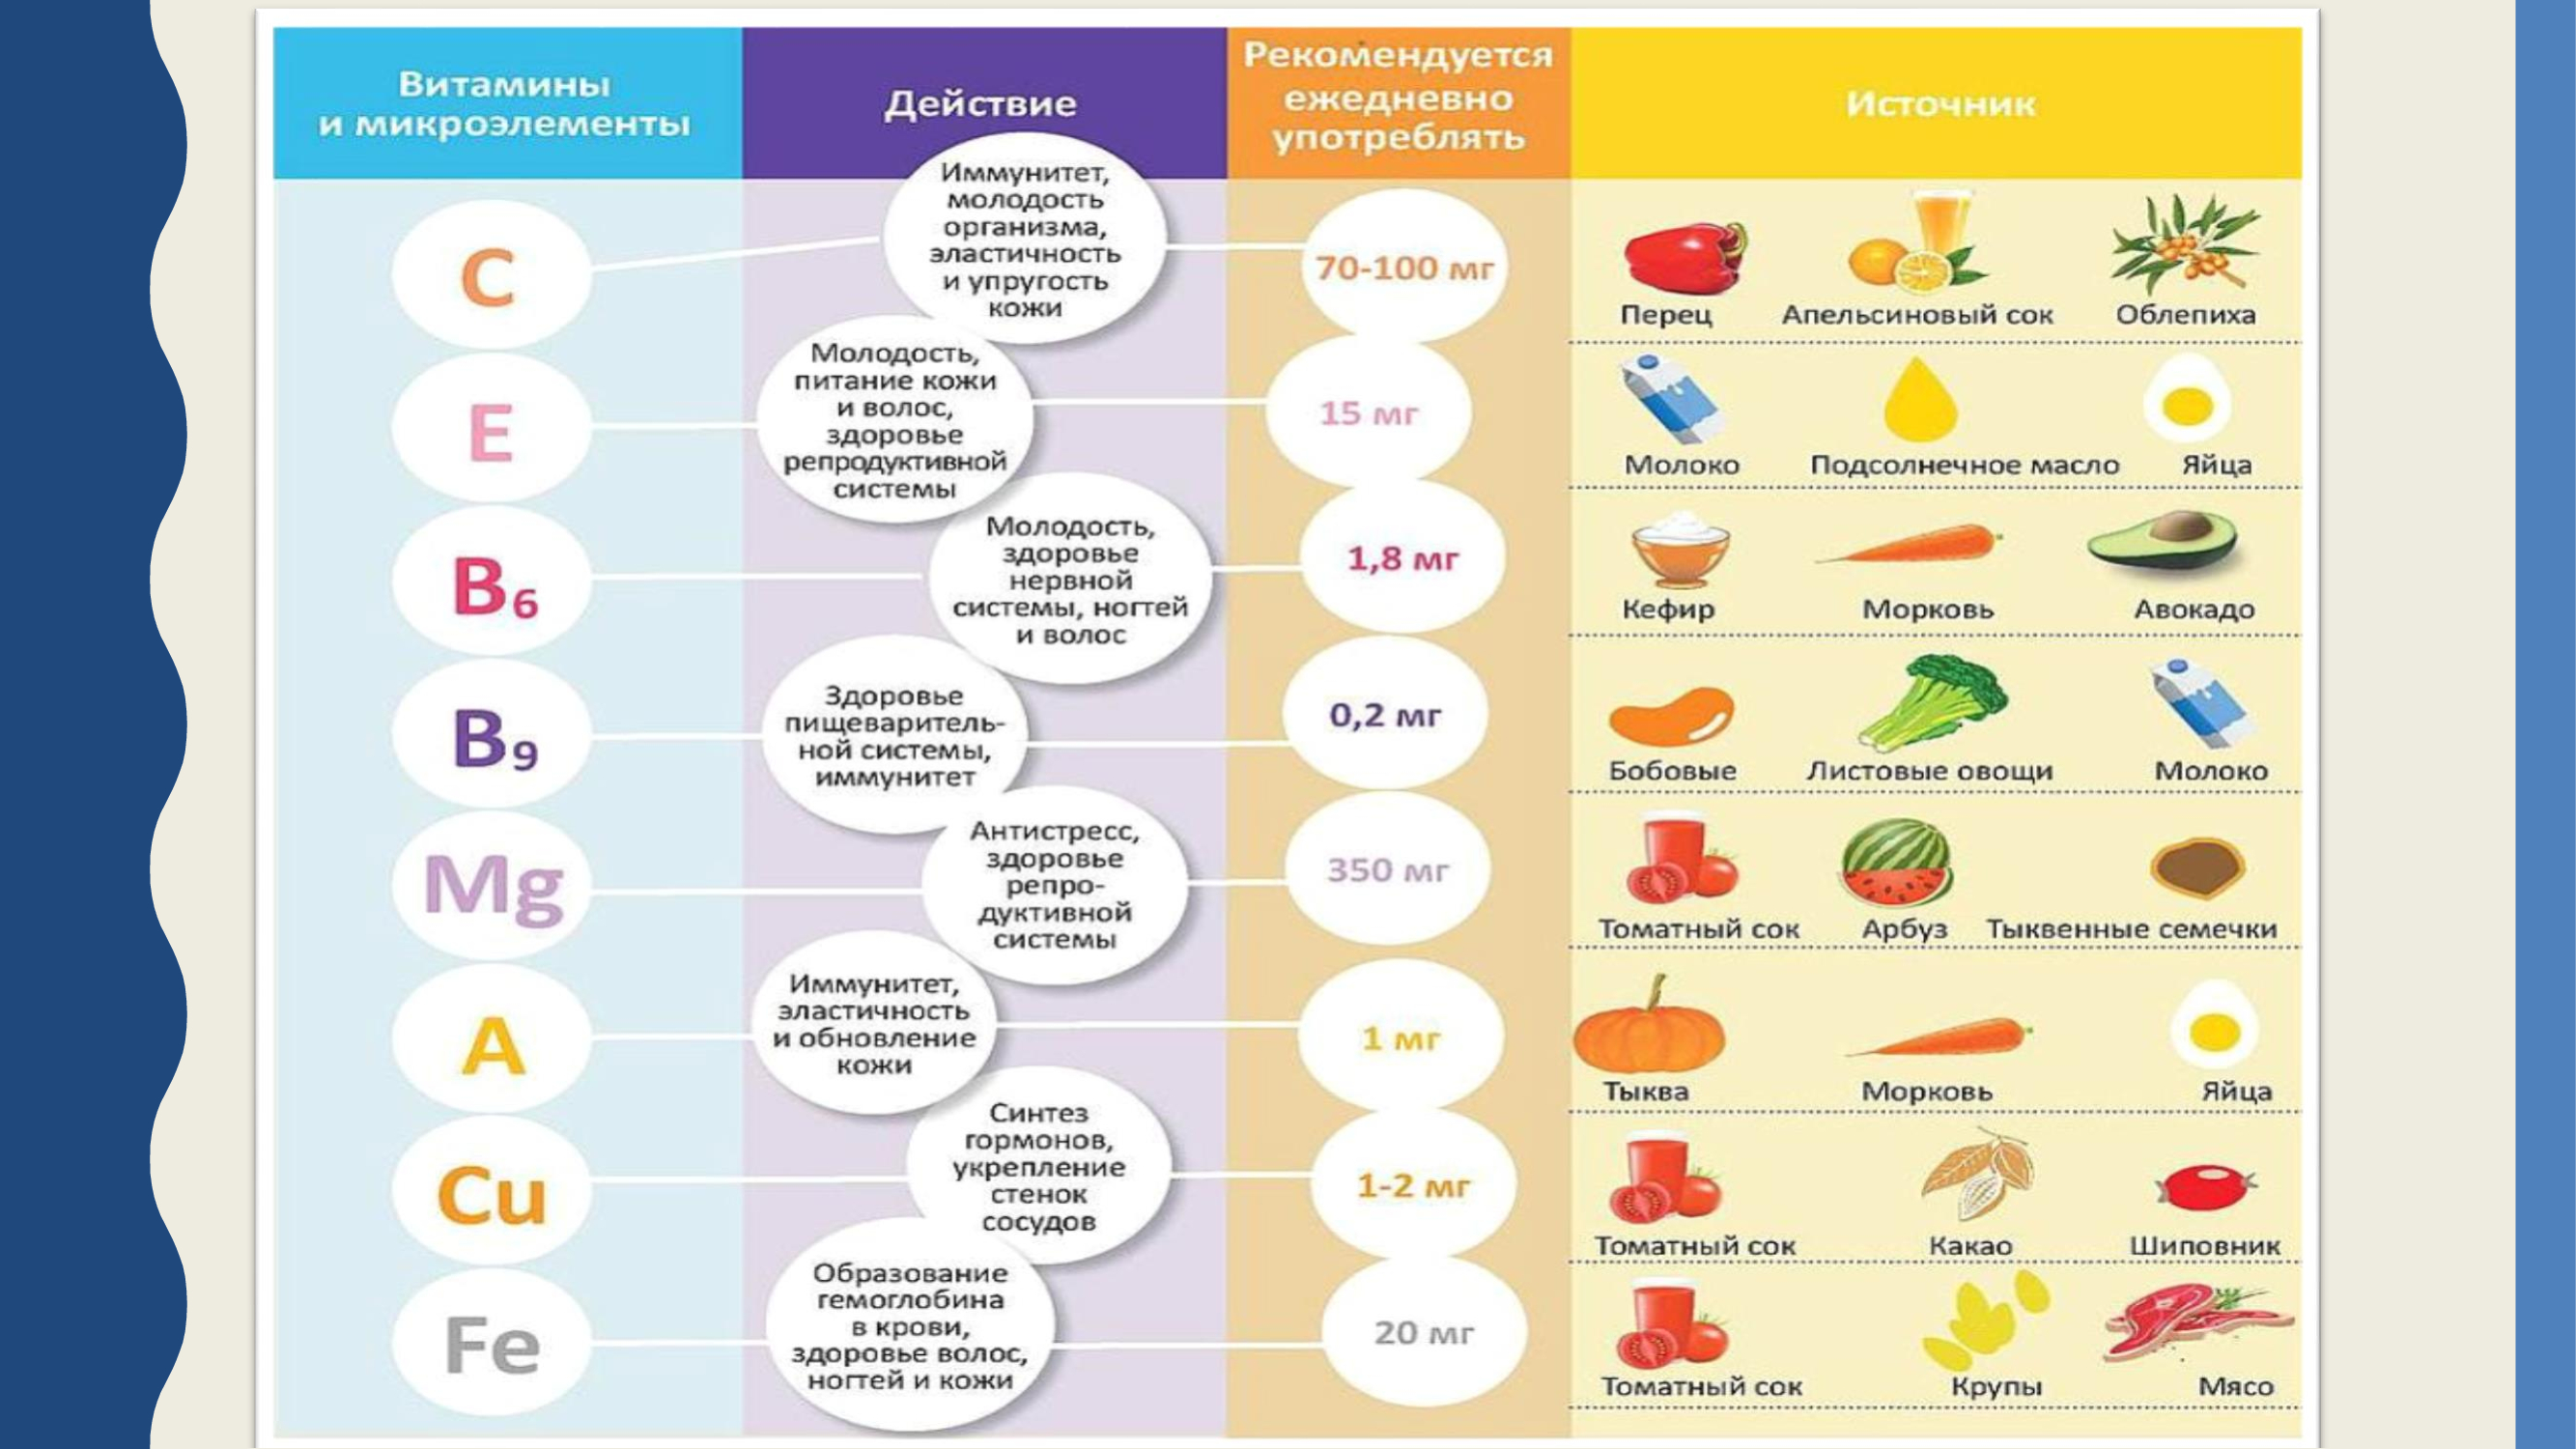 Какие принимать витамины для здоровья. Витамины и микроэлементы. Здоровое питание таблица витаминов. Источник витаминов и микроэлементов. Микроэлементы и витамины в пище.